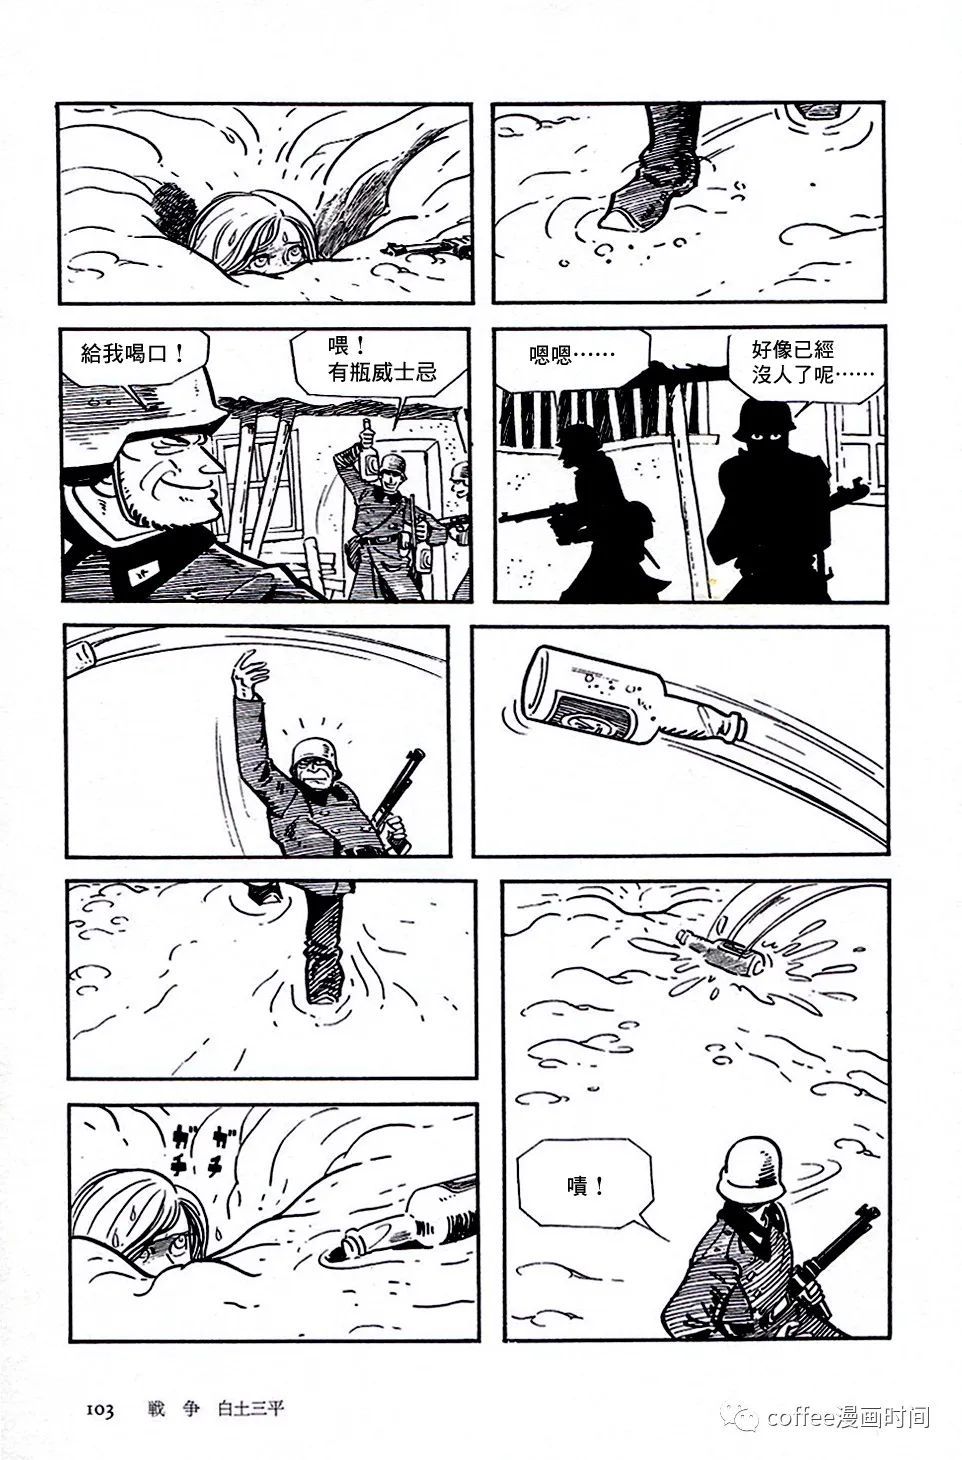 日本短篇漫画杰作集 - 白土三平《战争》 - 7